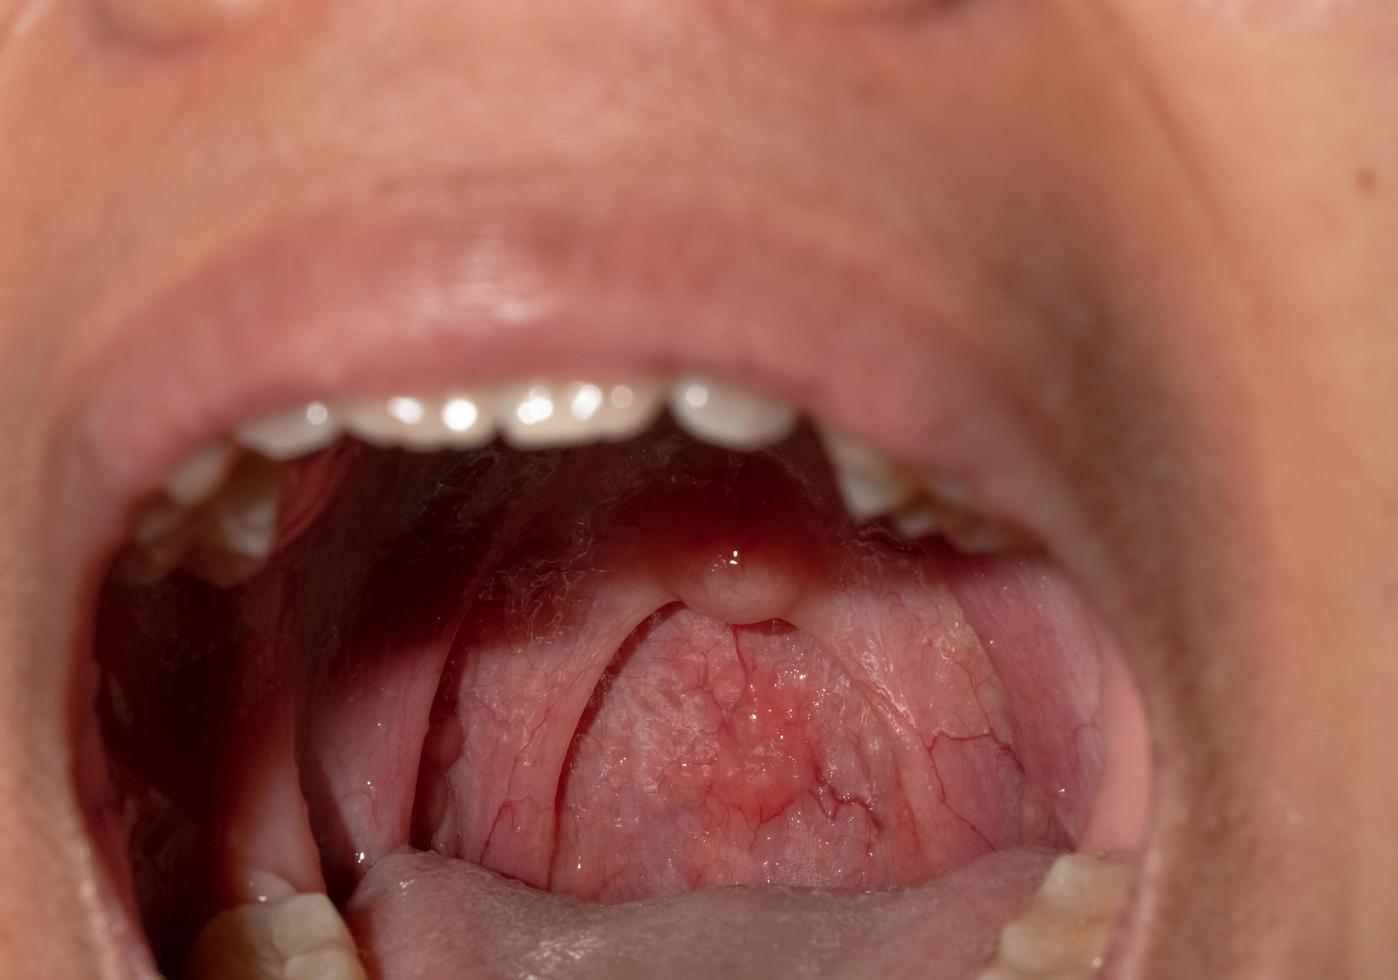 ont i halsen med svullen hals. närbild öppen mun med svullnad i bakre svalgväggen och uvula och tonsiller. influensafolliklar i bakre svalgväggen. övre luftvägarna. foto